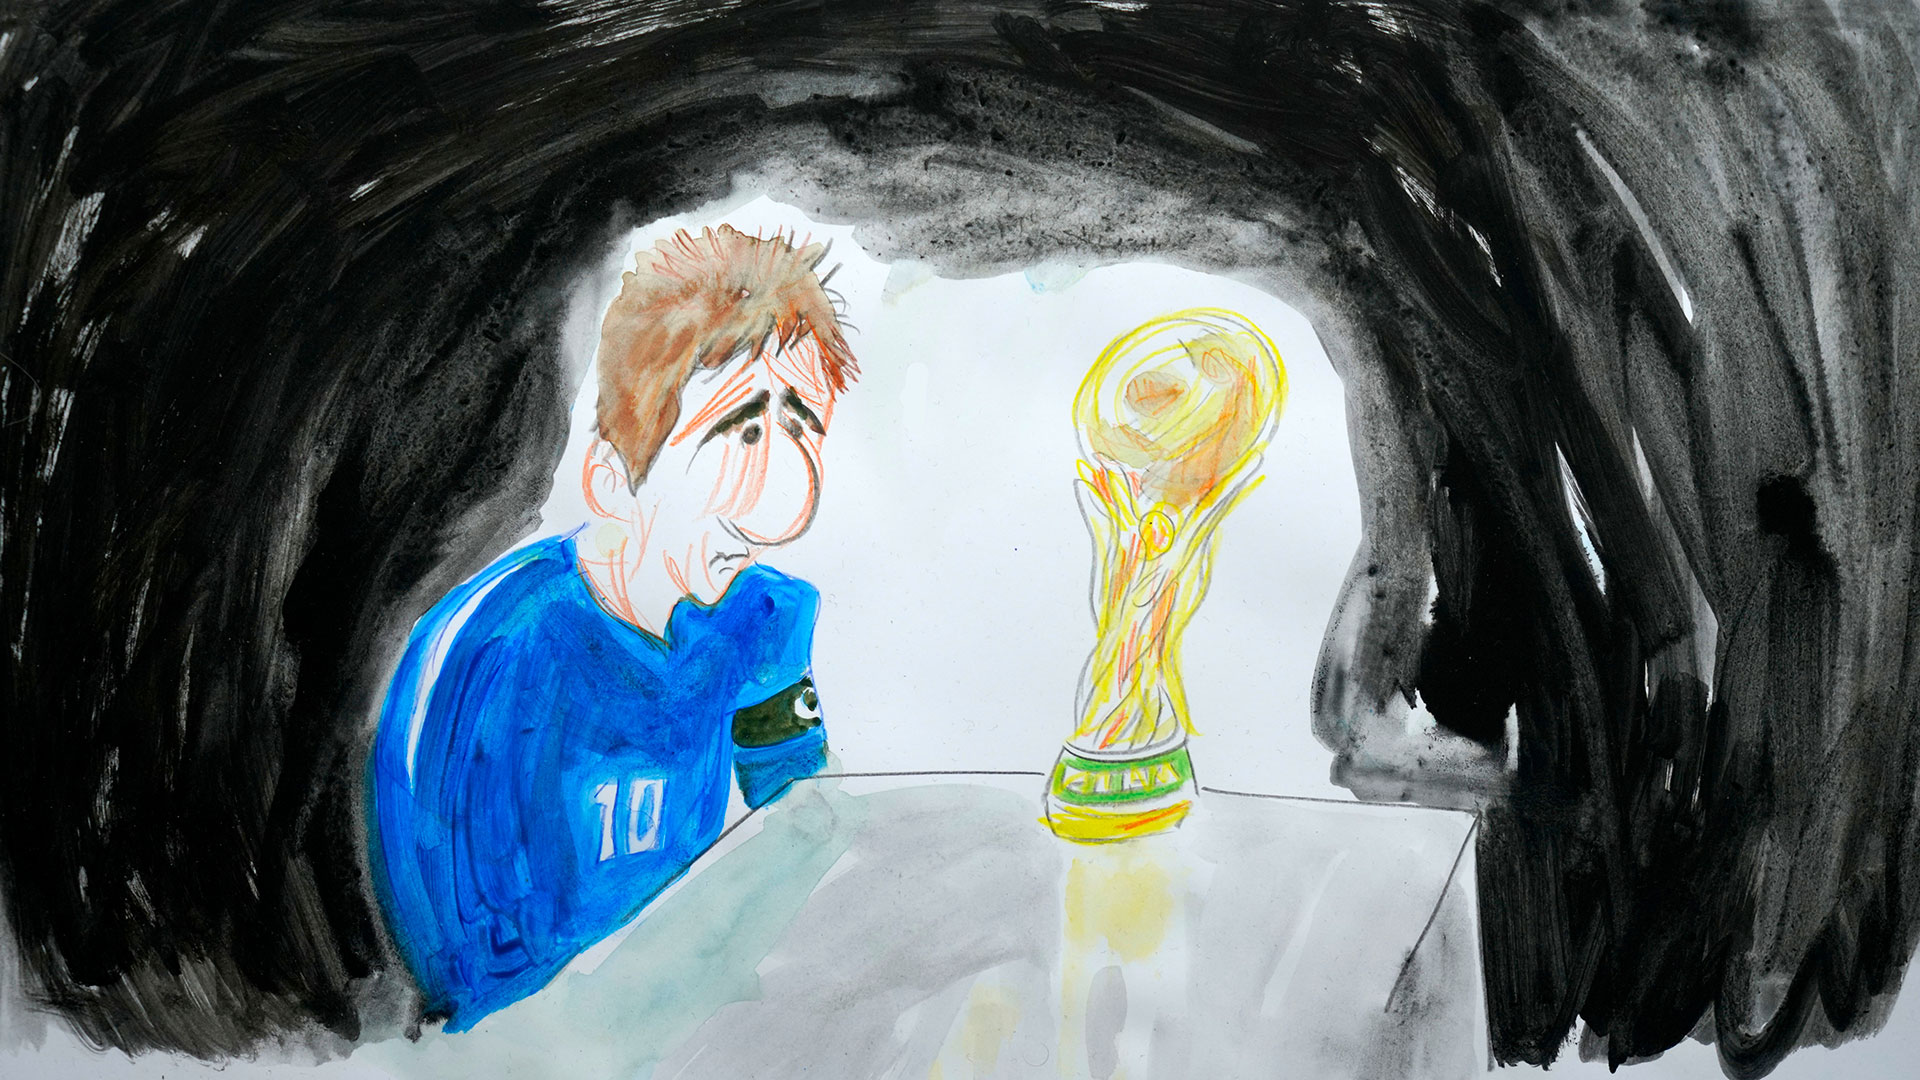 La mirada triste de Lionel Messi (y con ella, la de todos los argentinos y argentinas) sobre la Copa del Mundo, objeto de deseo perdido en la final de Brasil 2014